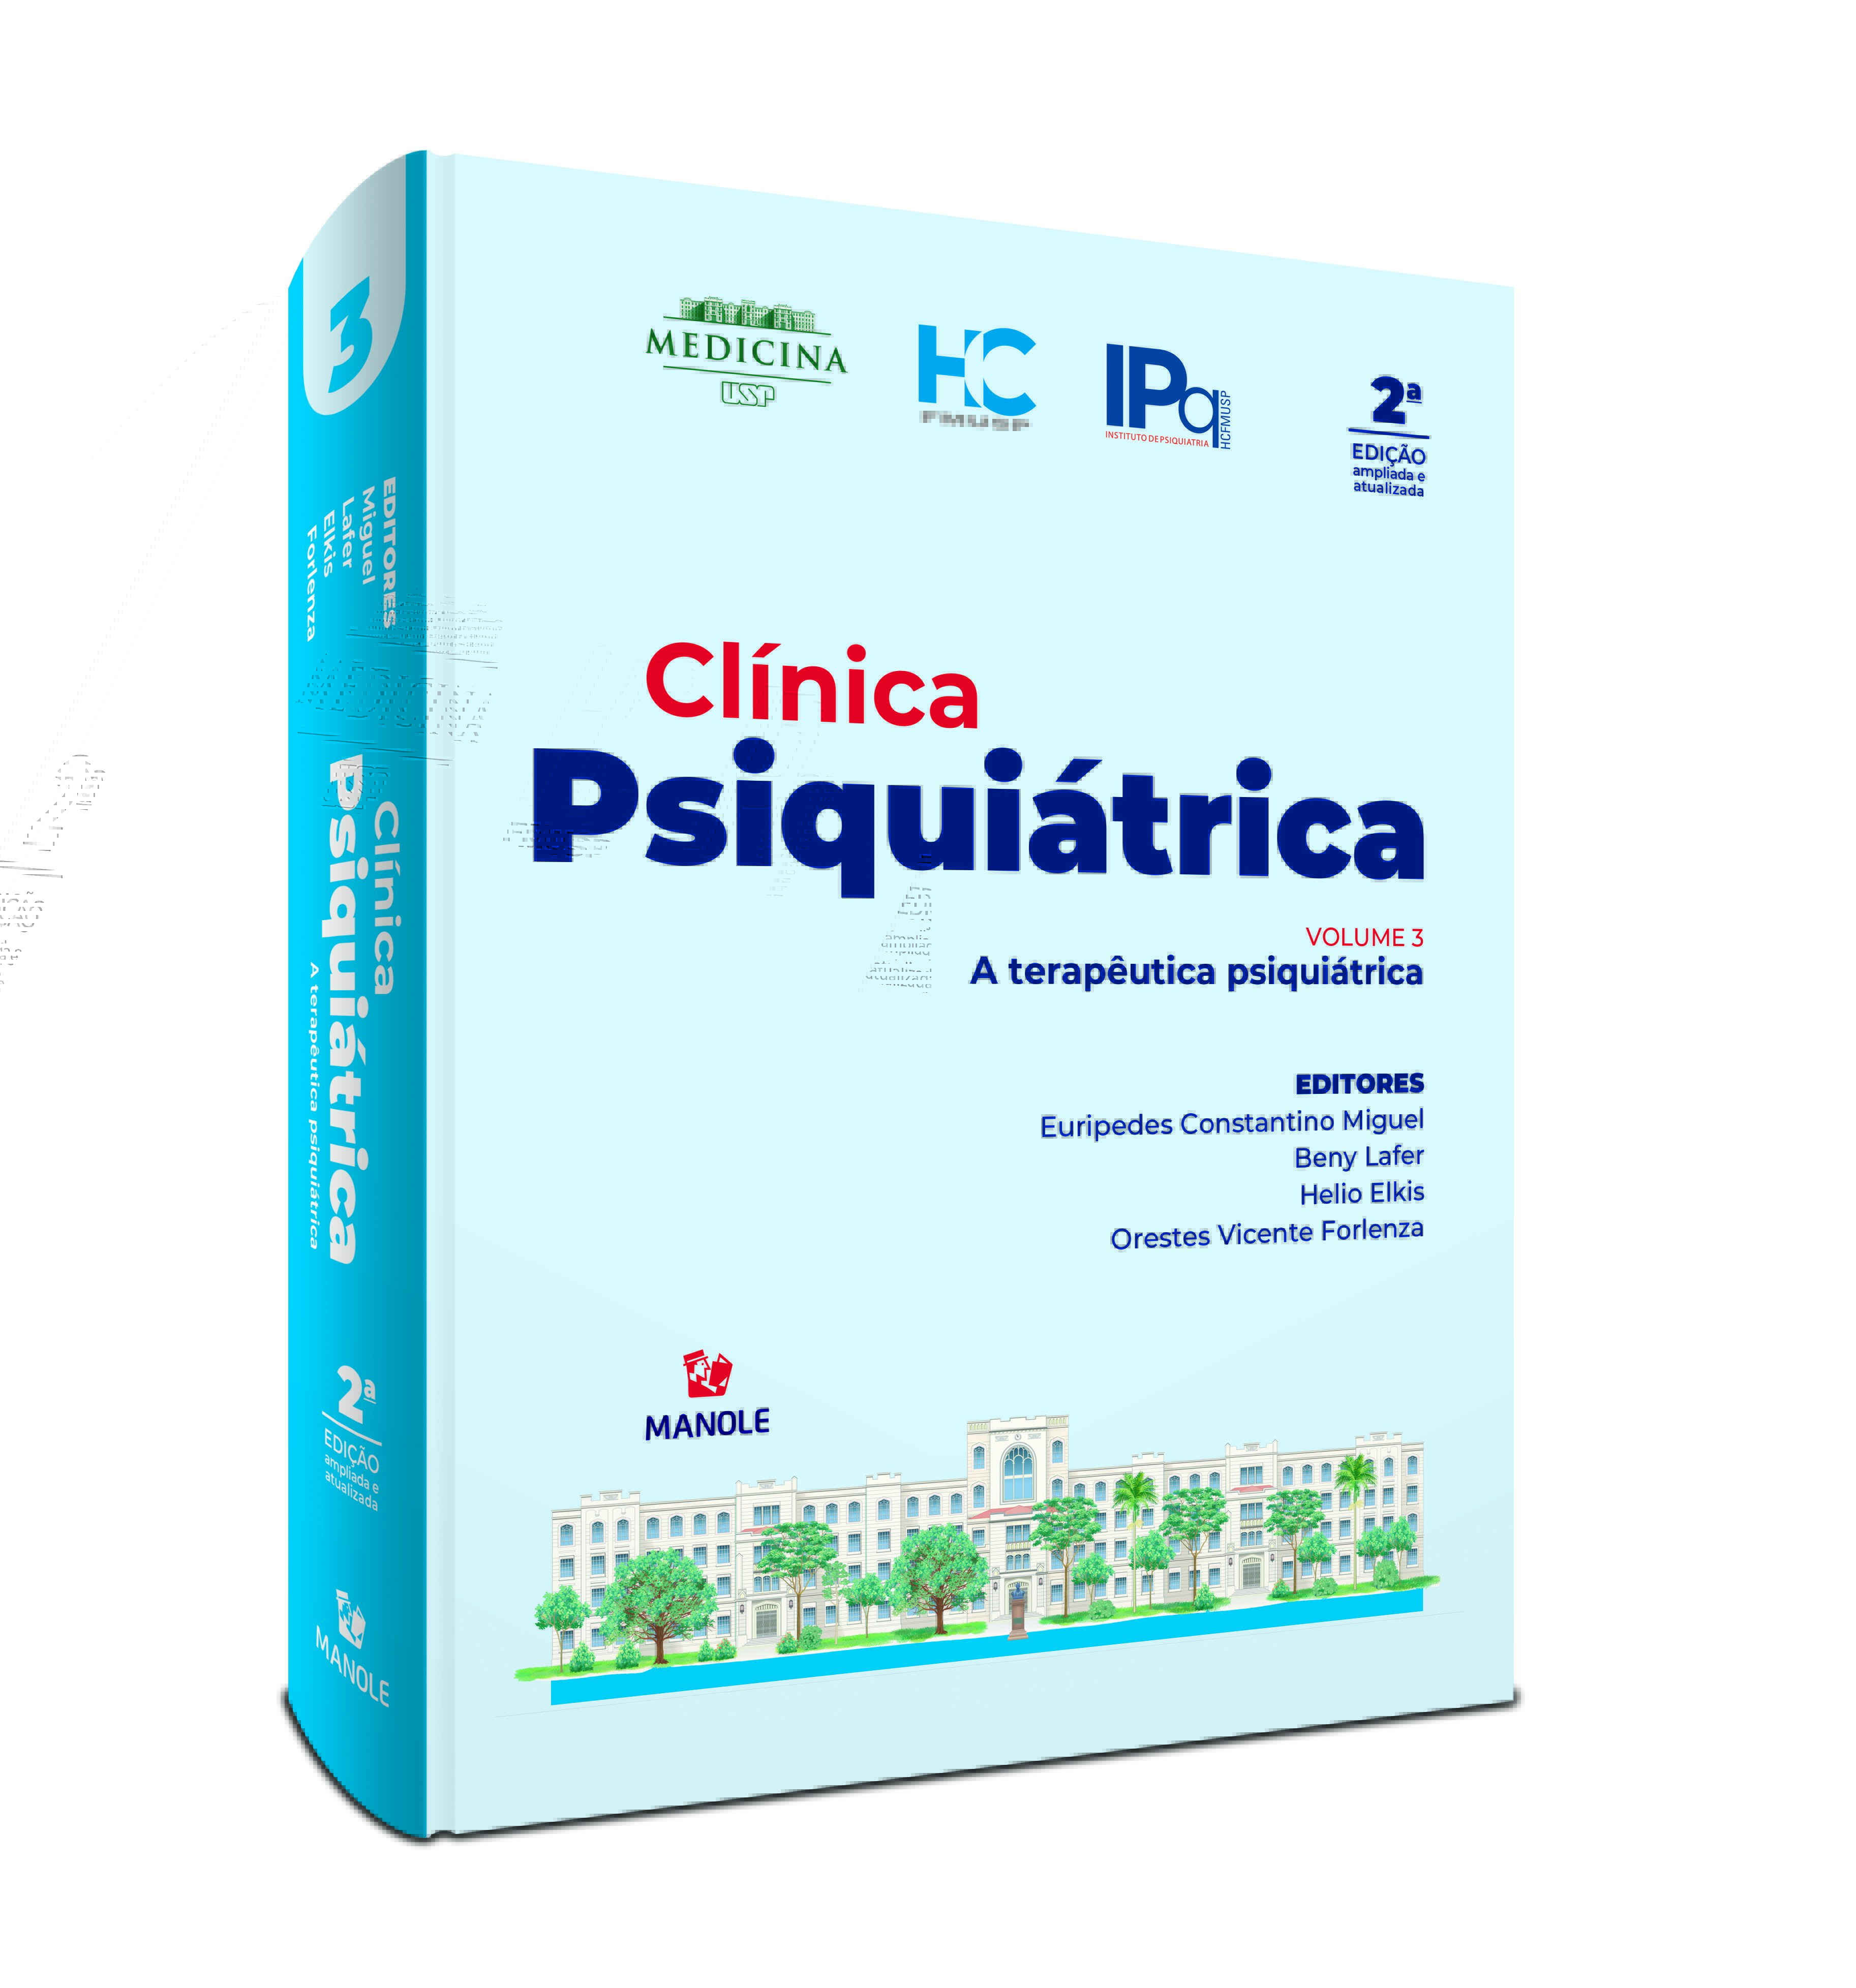 Clínica Psiquiátrica HC FMUSP 2ª edição ampliada e atualizada - volume 3 - A terapêutica psiquiátric